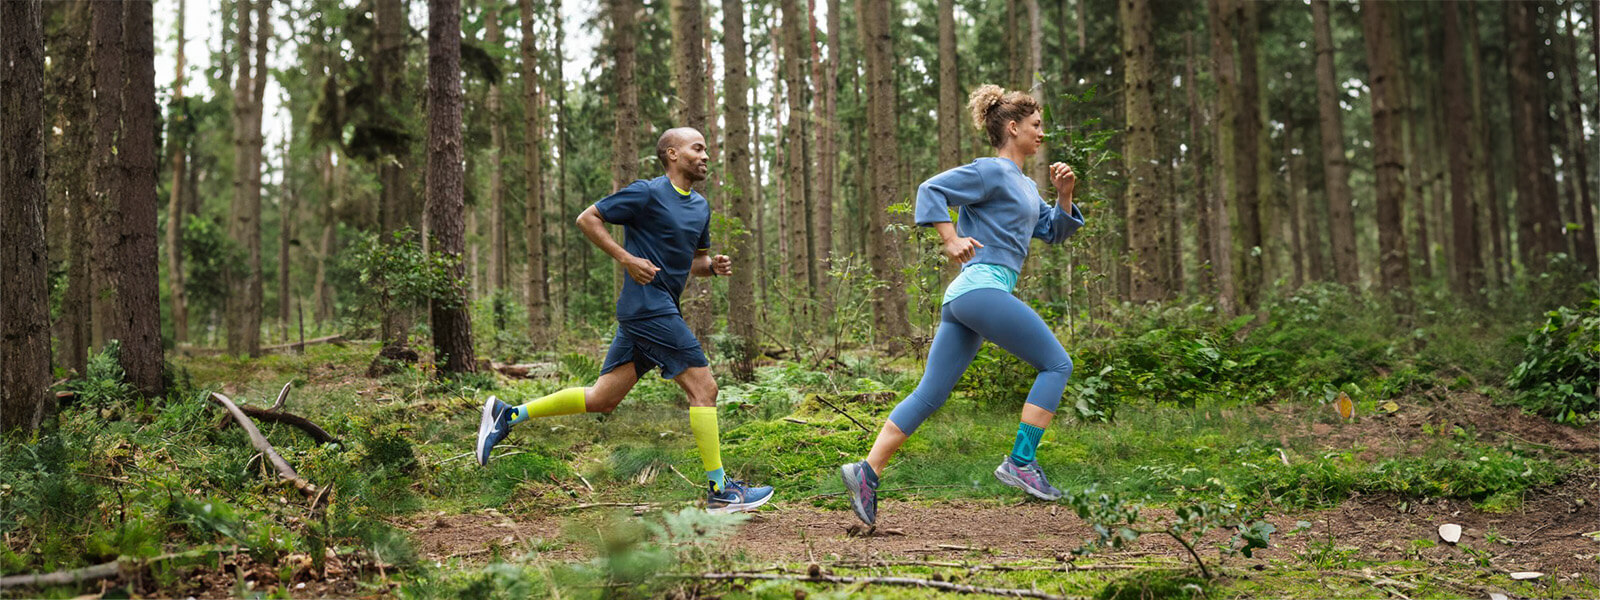 Een vrouw en een man rennen door een dicht bos en dragen verbanden